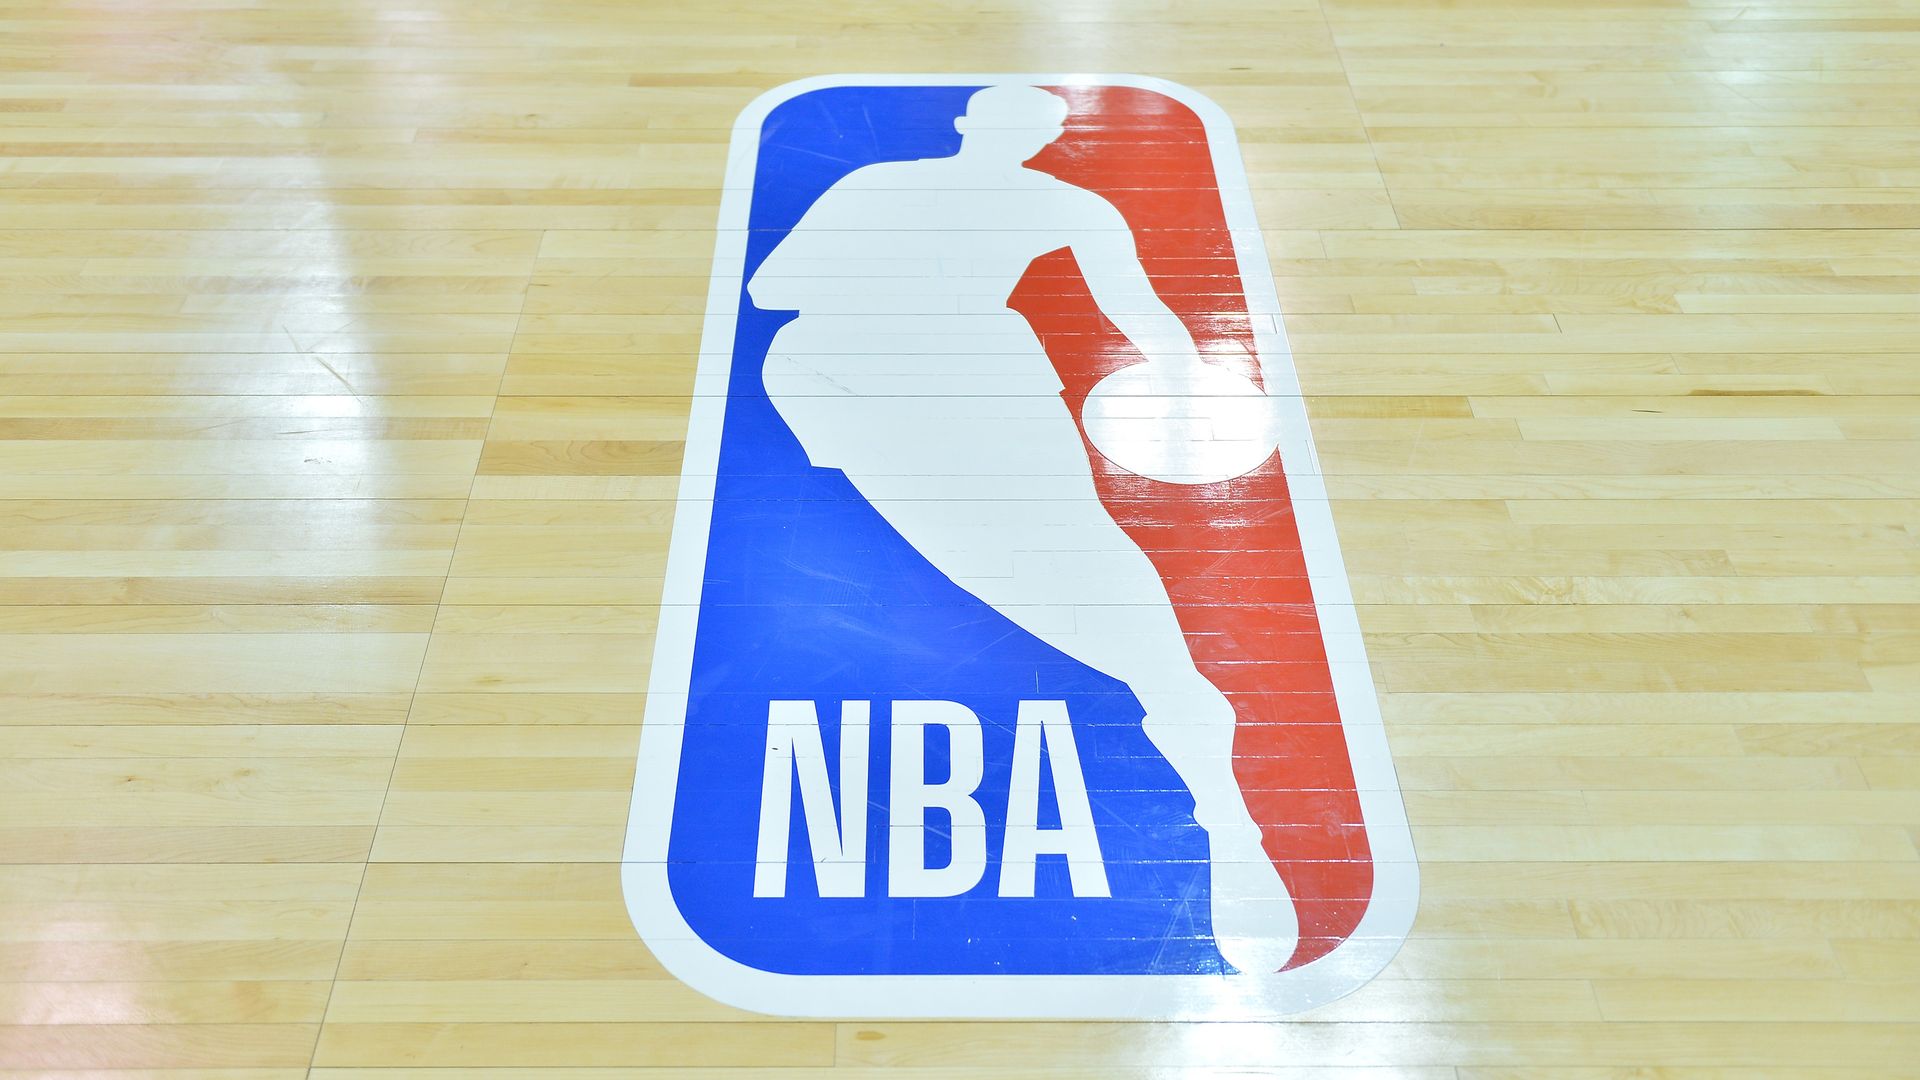 The NBA logo.